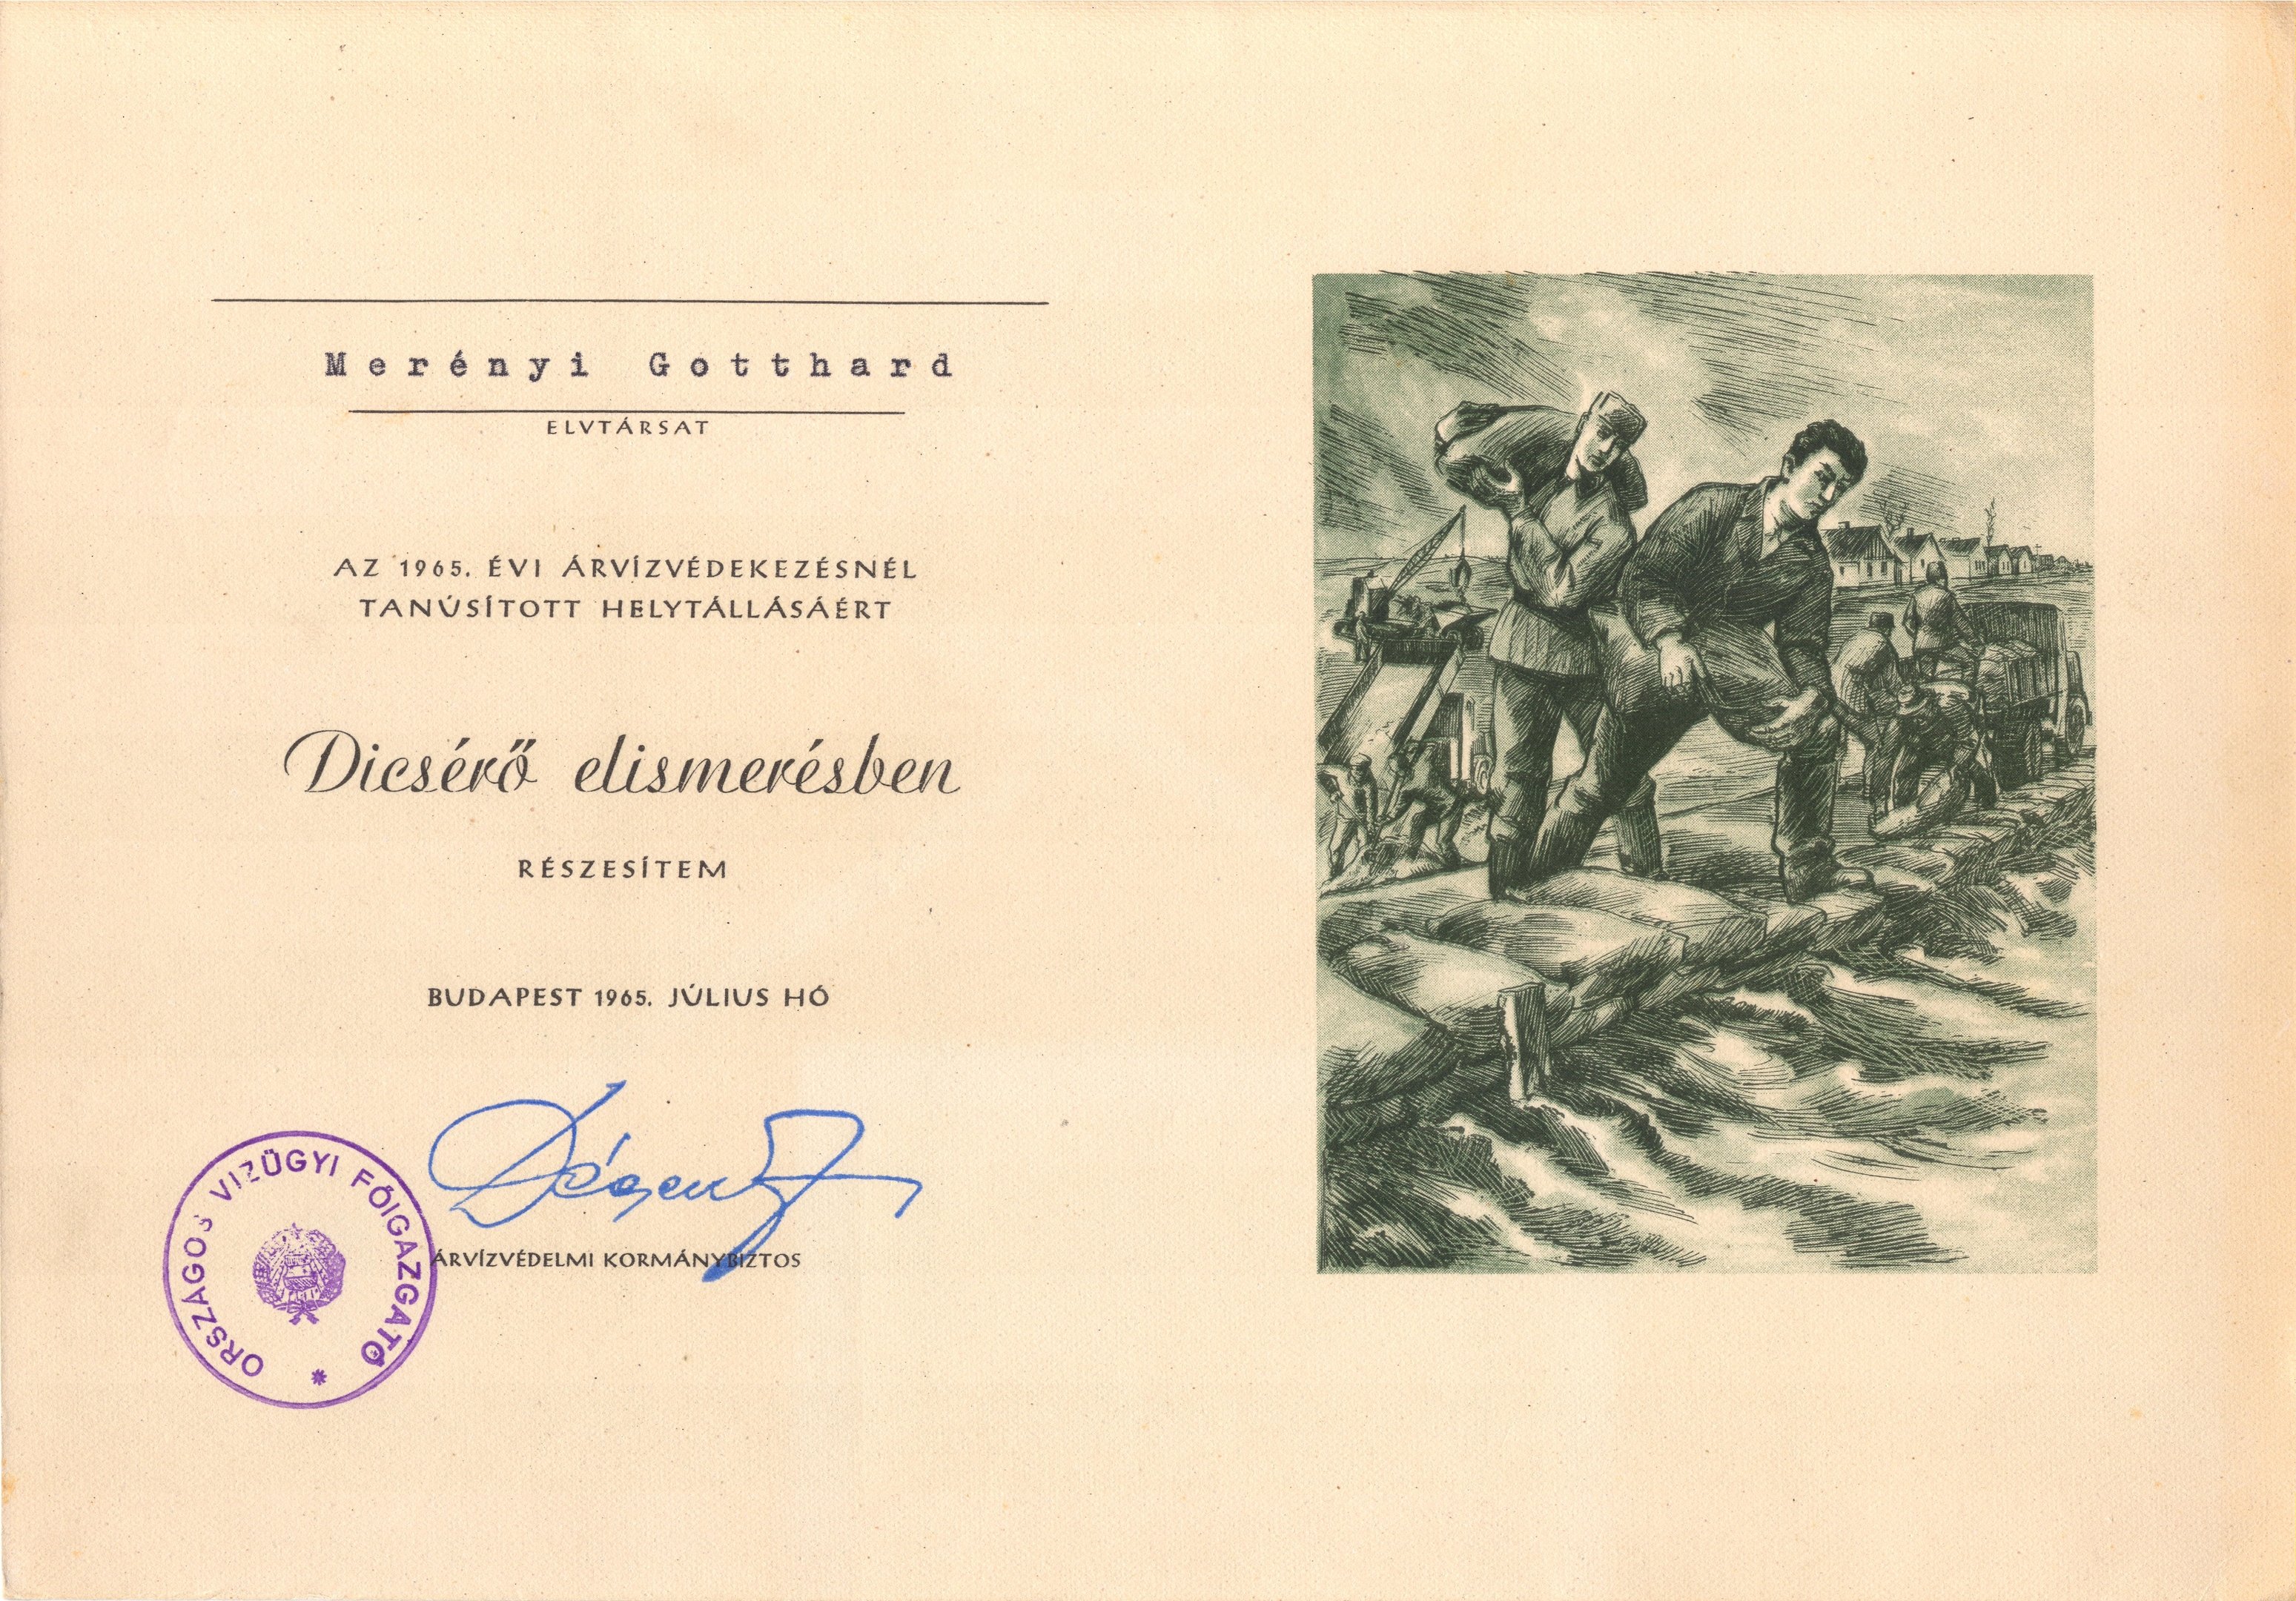 Dícsérő elismerés Merényi Gotthárd részére, 1965 (Magyar Környezetvédelmi és Vízügyi Múzeum - Duna Múzeum CC BY-NC-SA)